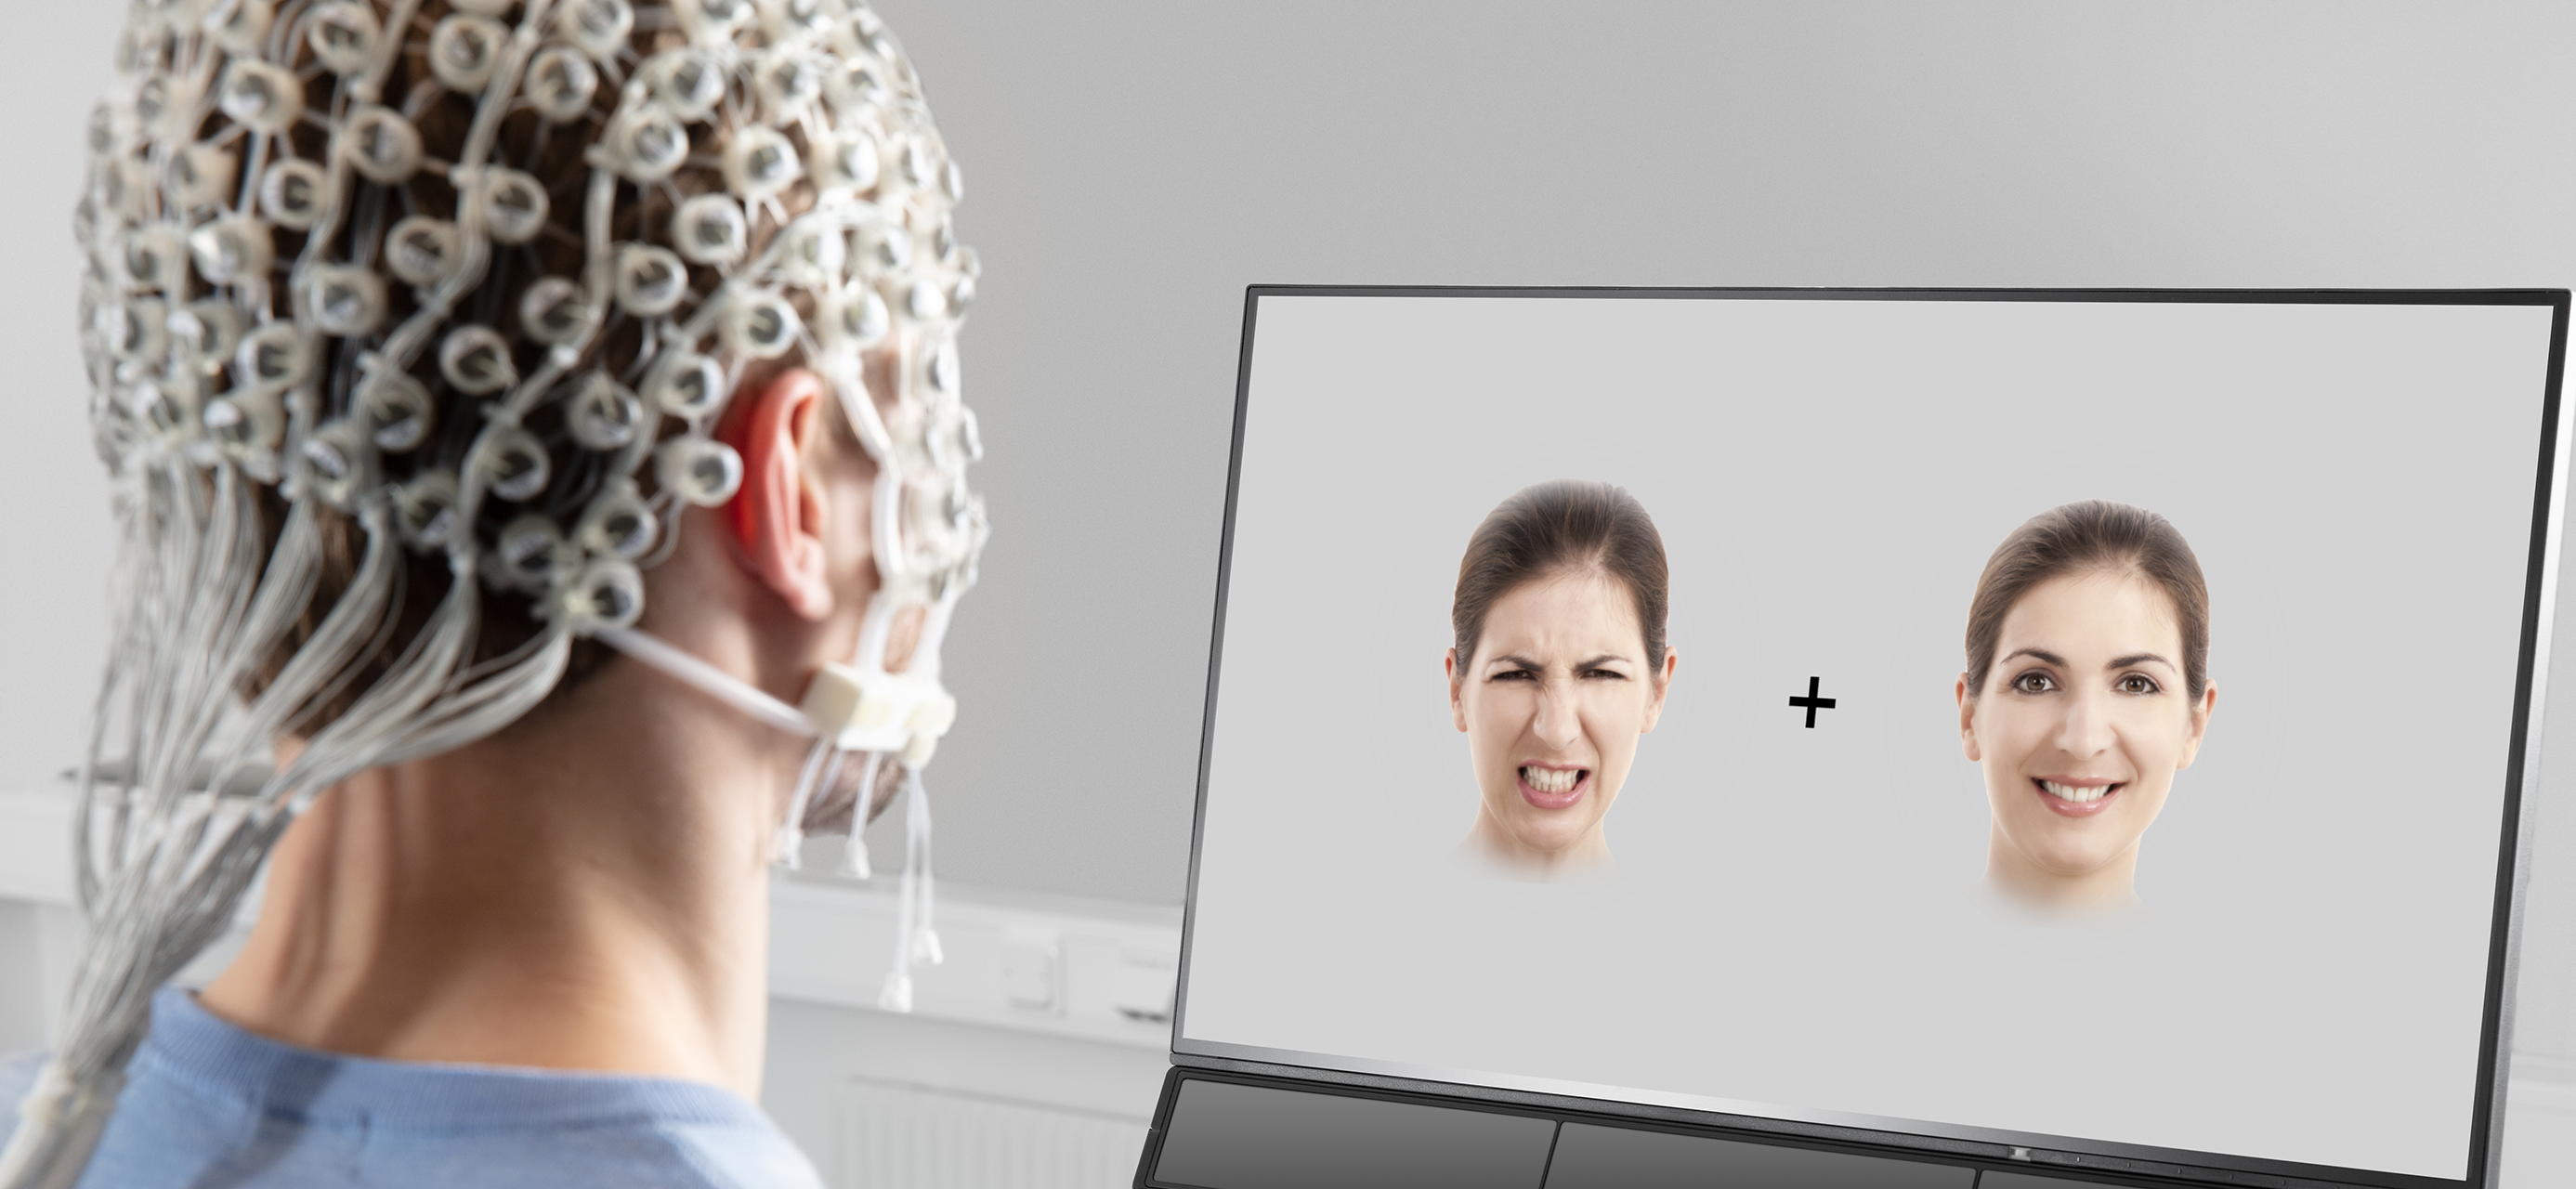 EEG and eye tracking